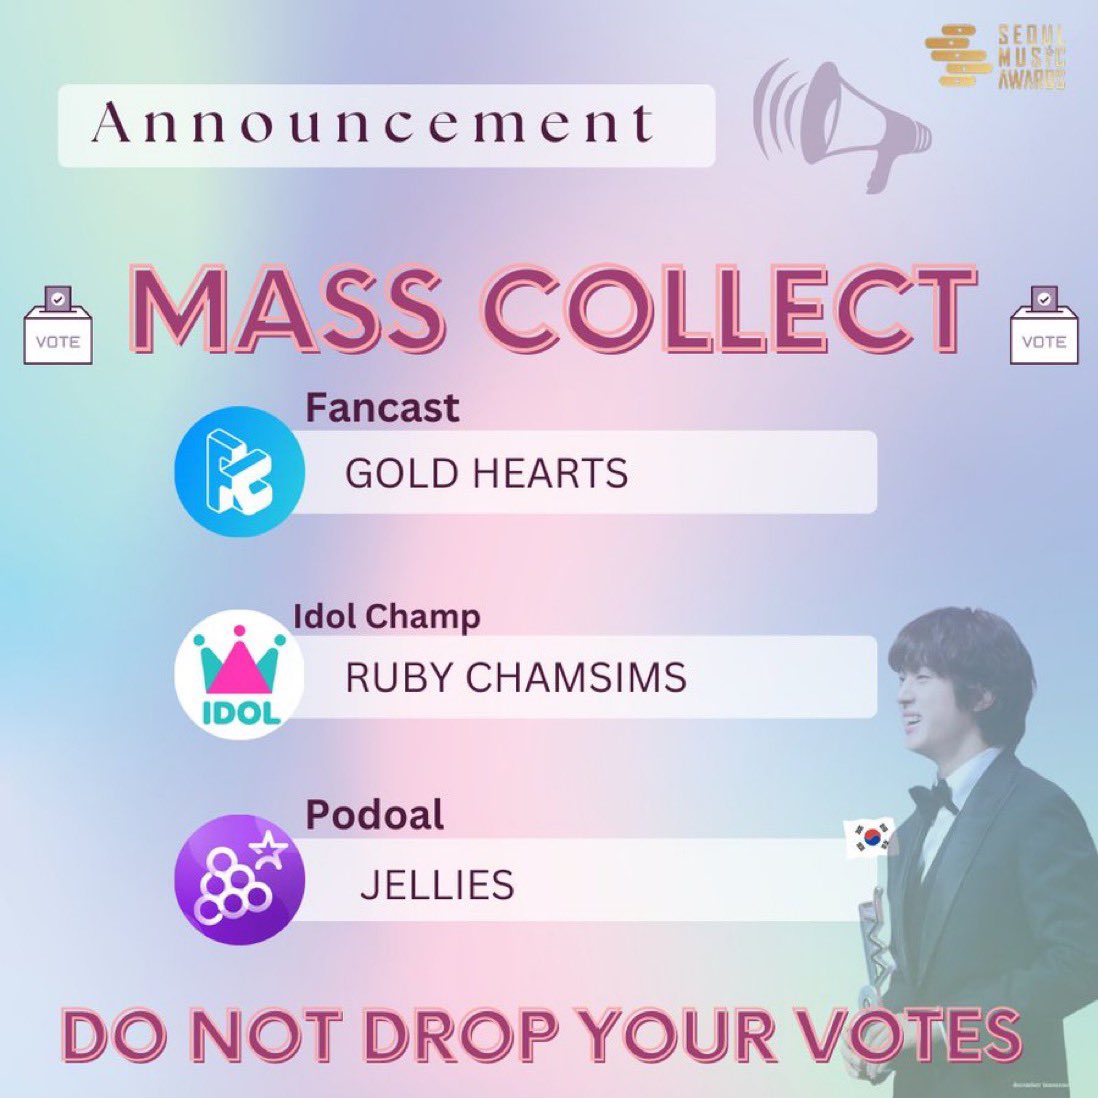 📢 𝗠𝗔𝗦𝗦 𝗖𝗢𝗟𝗟𝗘𝗖𝗧𝗜𝗢𝗡 ! La collecte de votes commencent maintenant ! Nous encourageons tout le monde à collecter en masse des votes sur les trois applications pour l'artiste SMA du mois : ✓ Fancast 💛 Idol Champ ❤️ Podoal ⚡ ‼️NE VOTEZ PAS ‼️